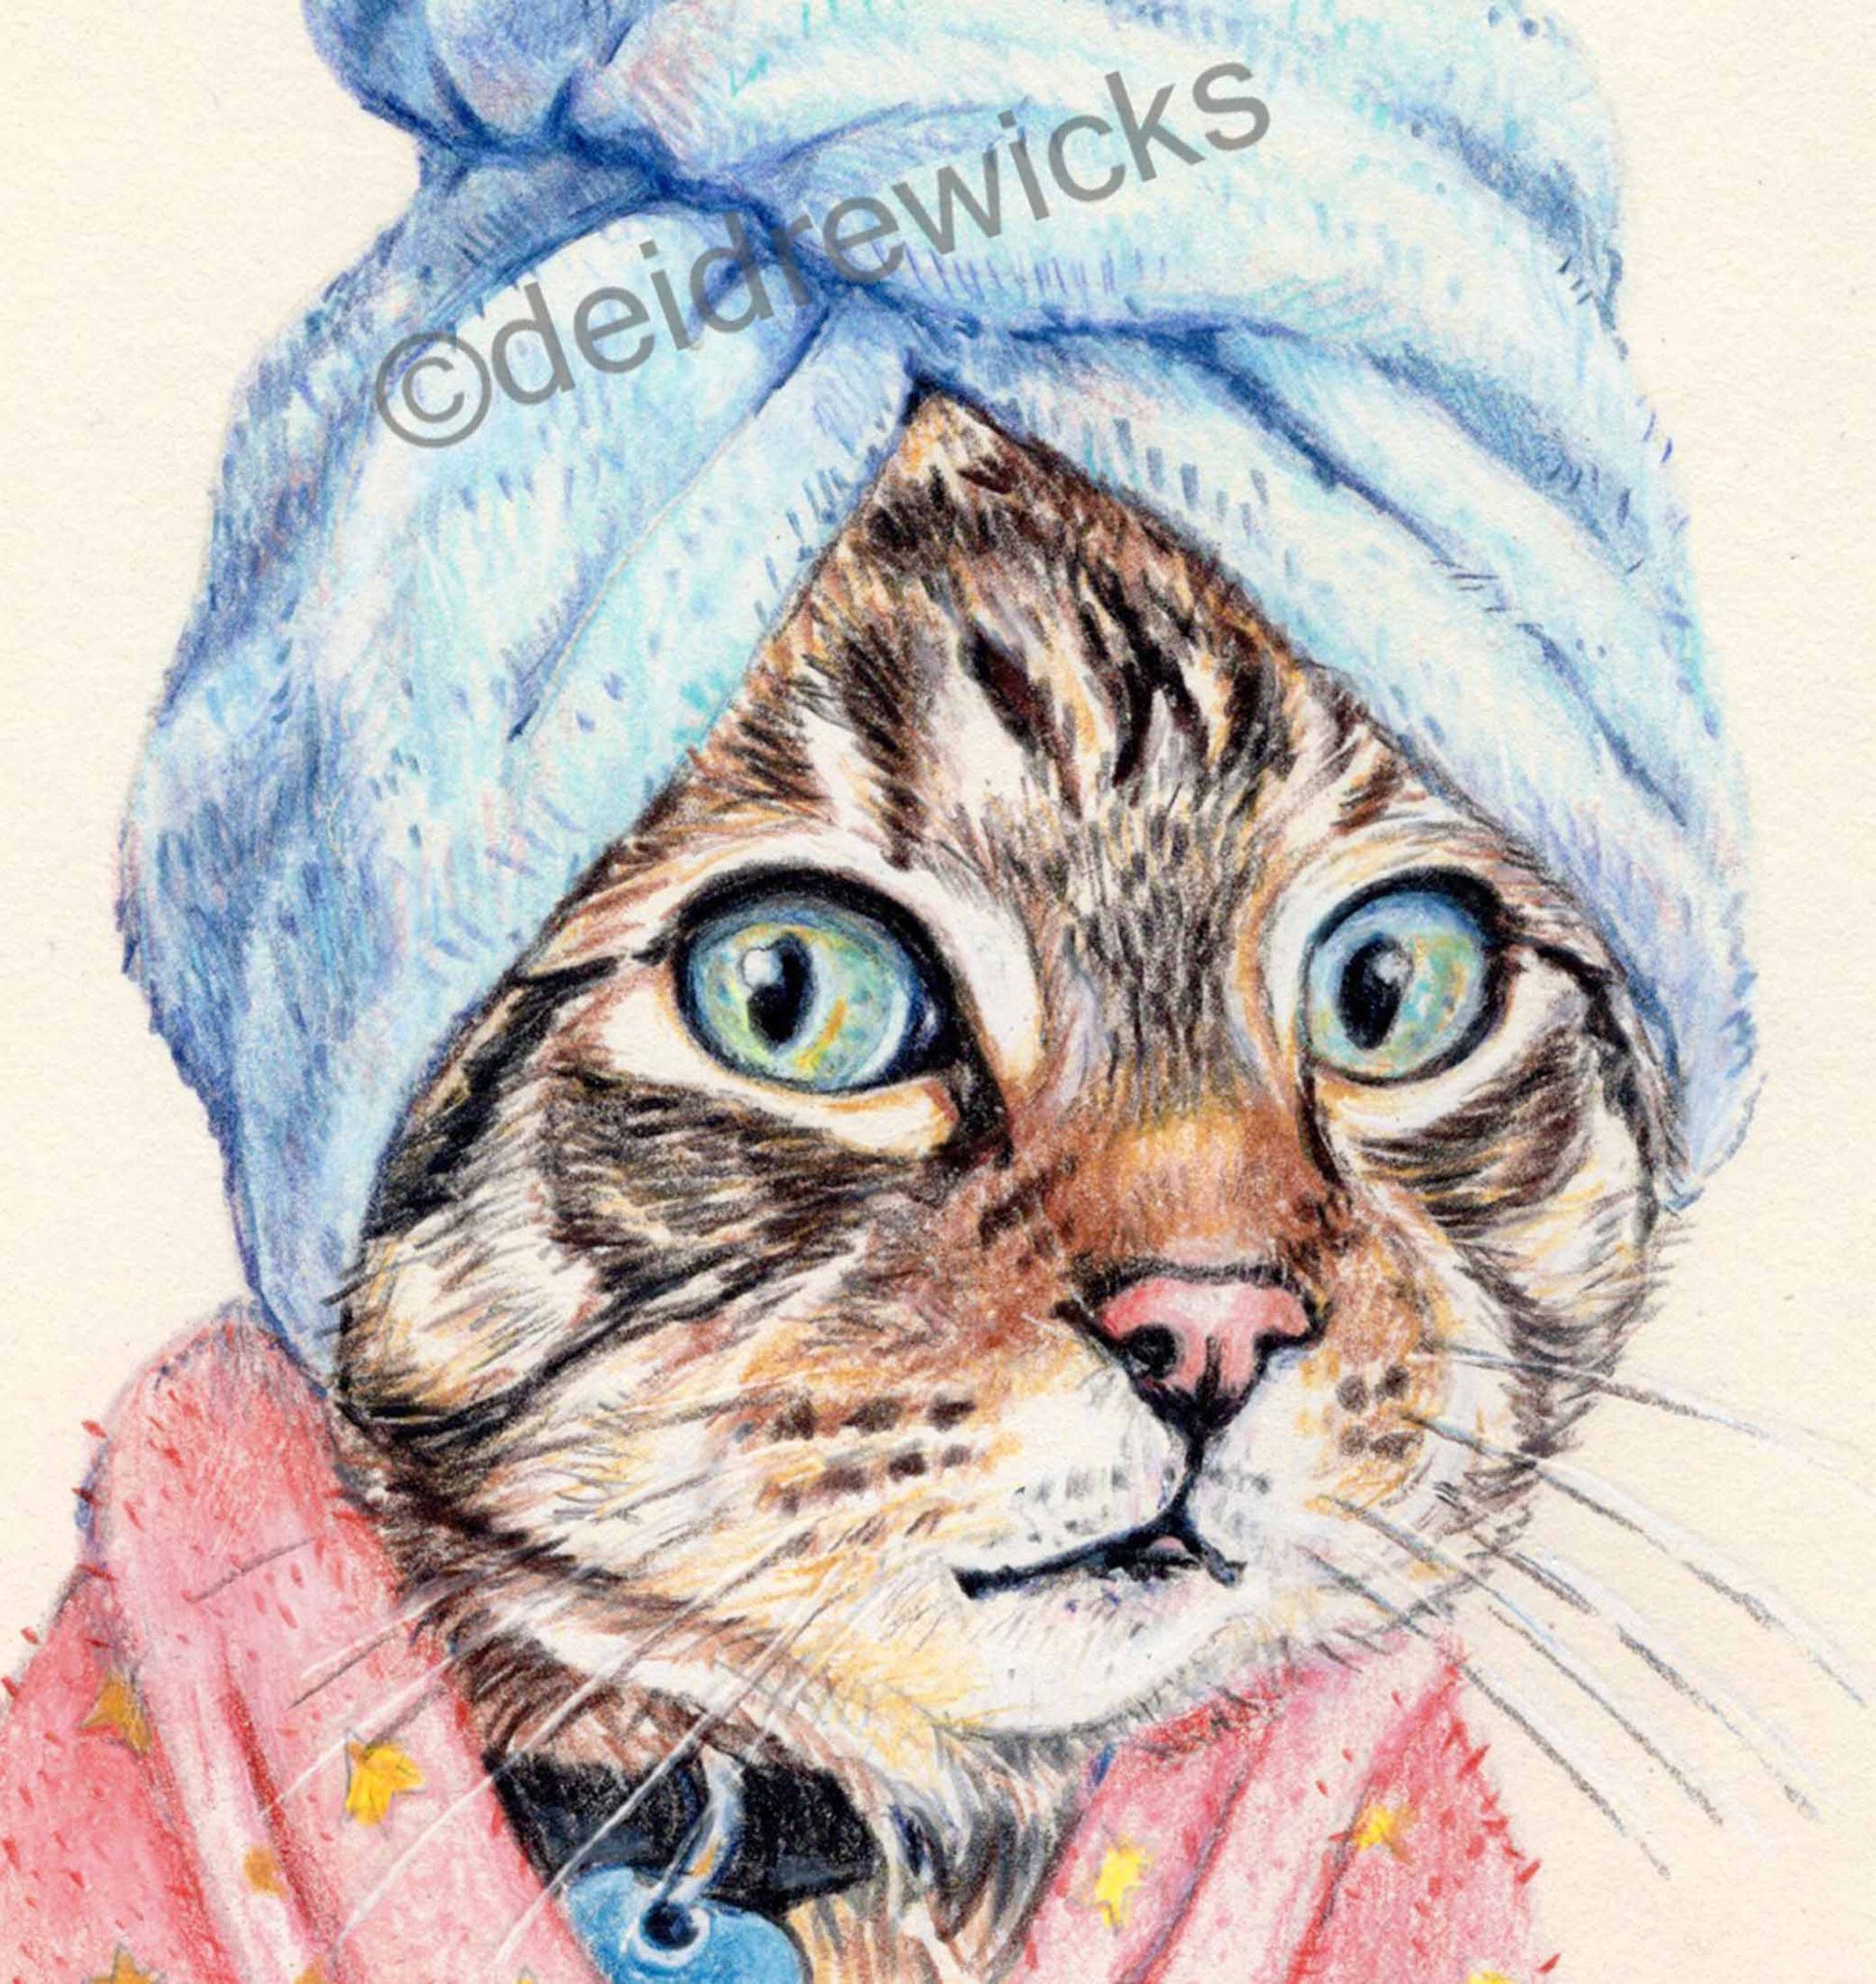 Close up of a cat wearing a blue bath towel on it's head. Art by Deidre Wicks